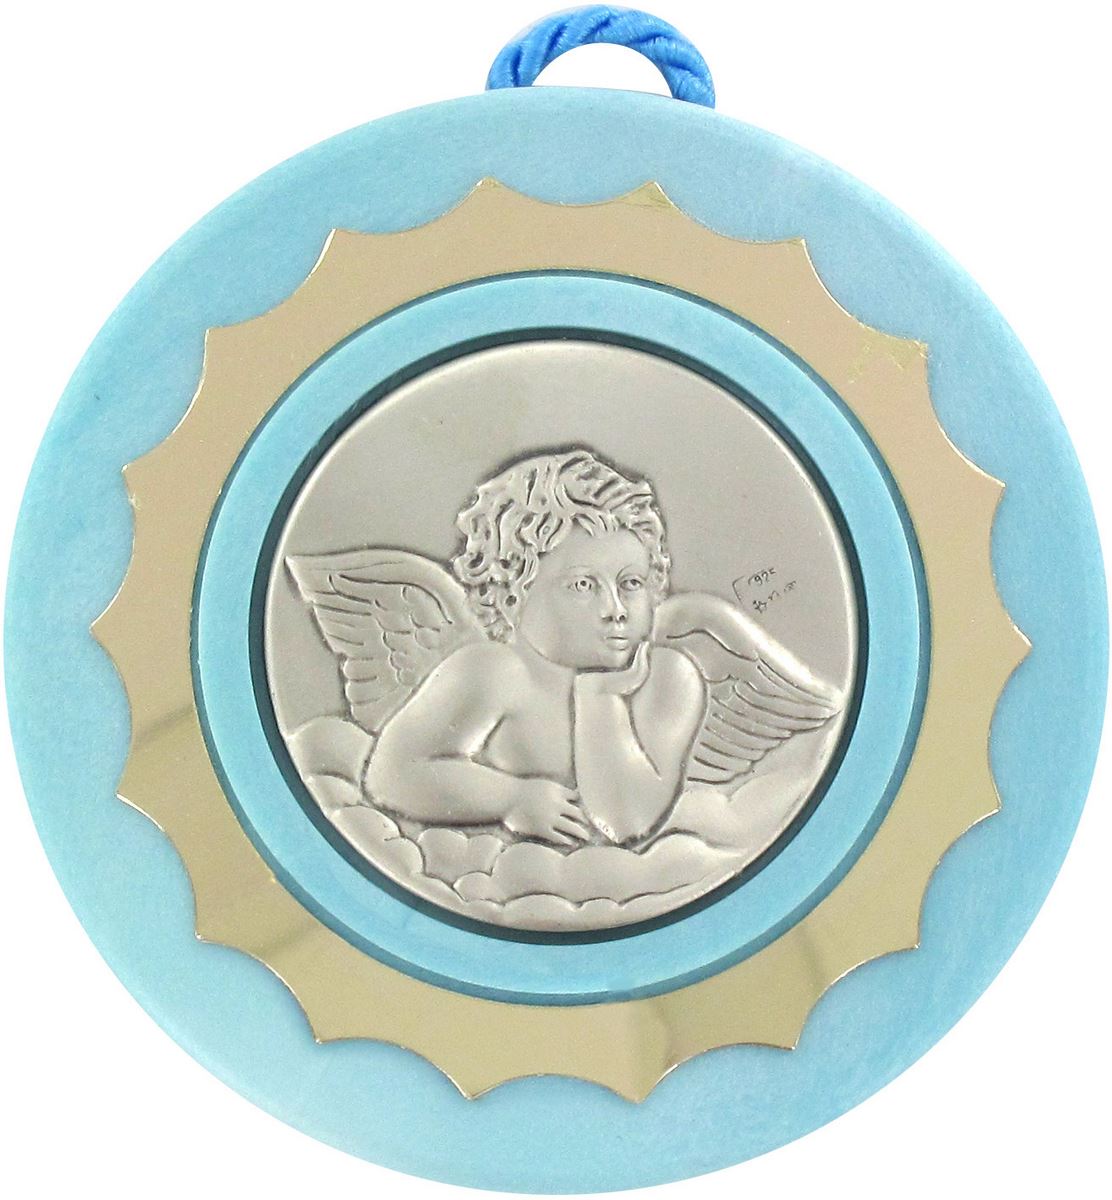 Sopraculla in argento 925 raffigurante un angioletto (azzurro) Ø 9 cm  Battesimo